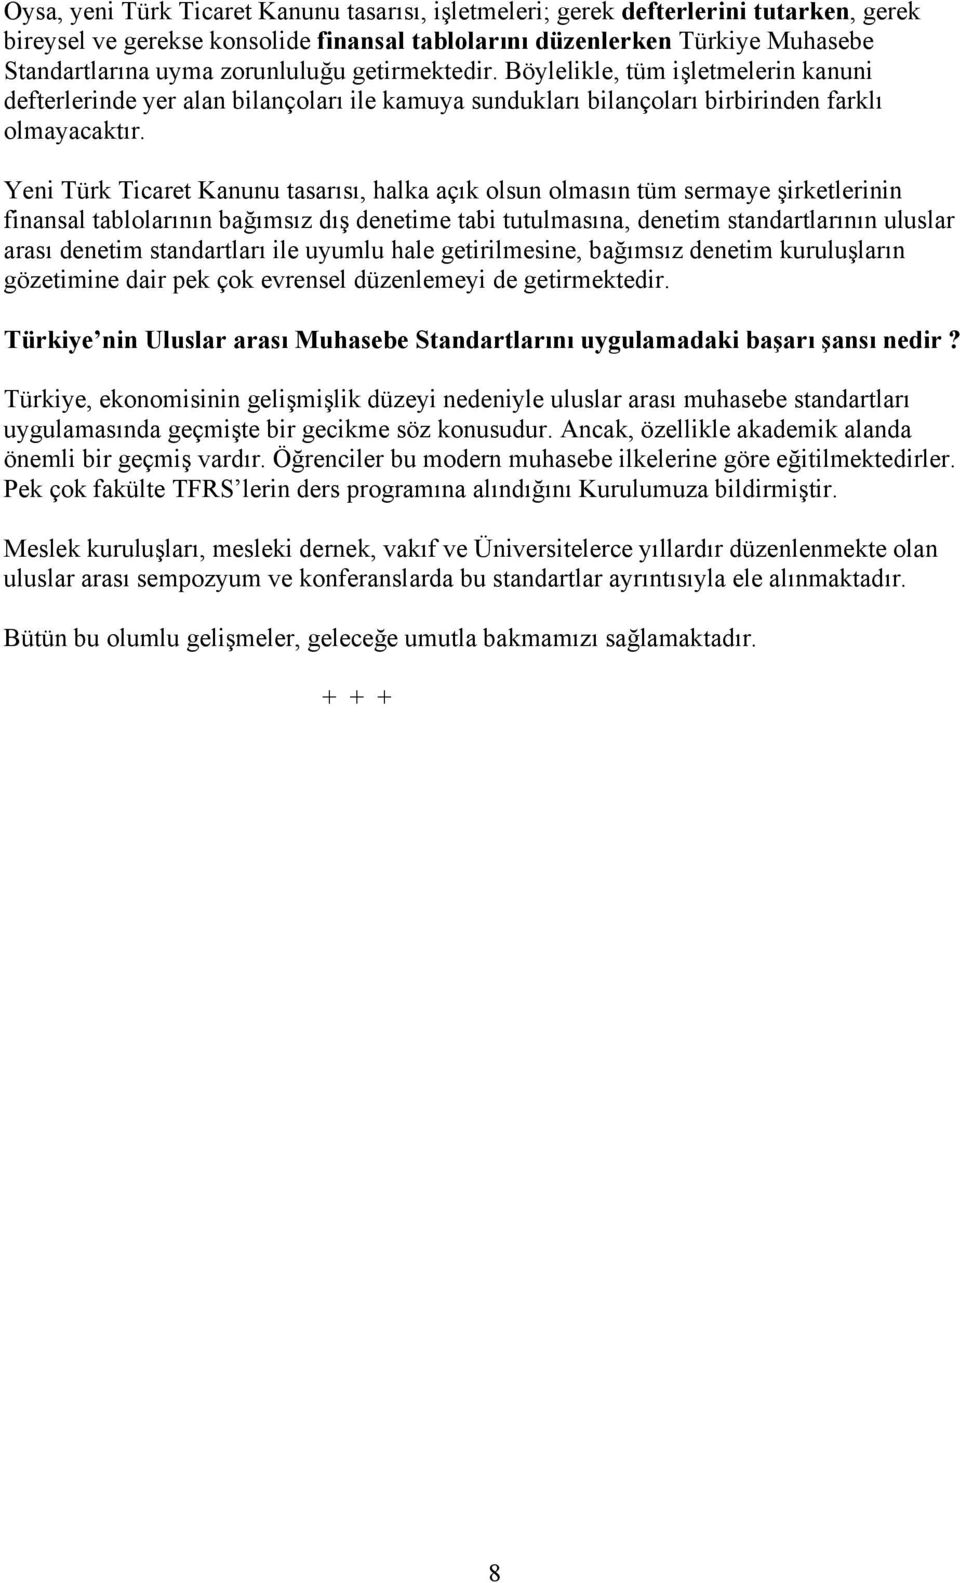 Yeni Türk Ticaret Kanunu tasarısı, halka açık olsun olmasın tüm sermaye şirketlerinin finansal tablolarının bağımsız dış denetime tabi tutulmasına, denetim standartlarının uluslar arası denetim